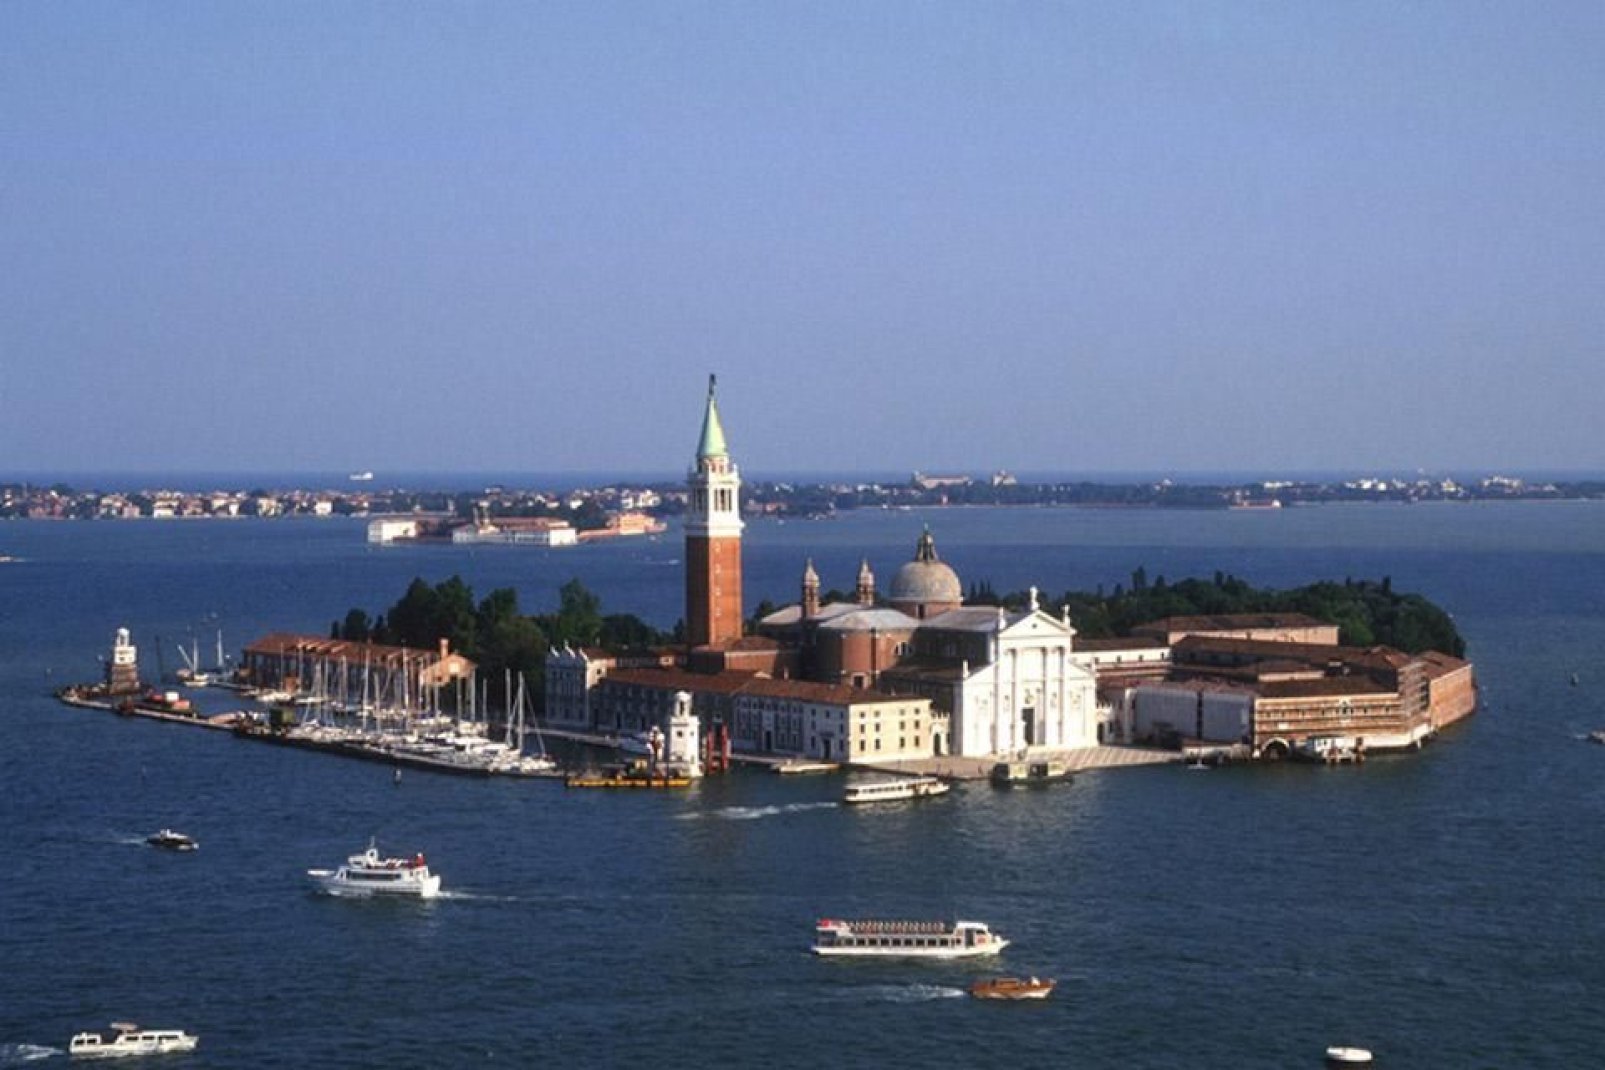 L'île de San Giorgio Maggiore est située face à la Place Saint-Marc et accueille la basilique homonyme.